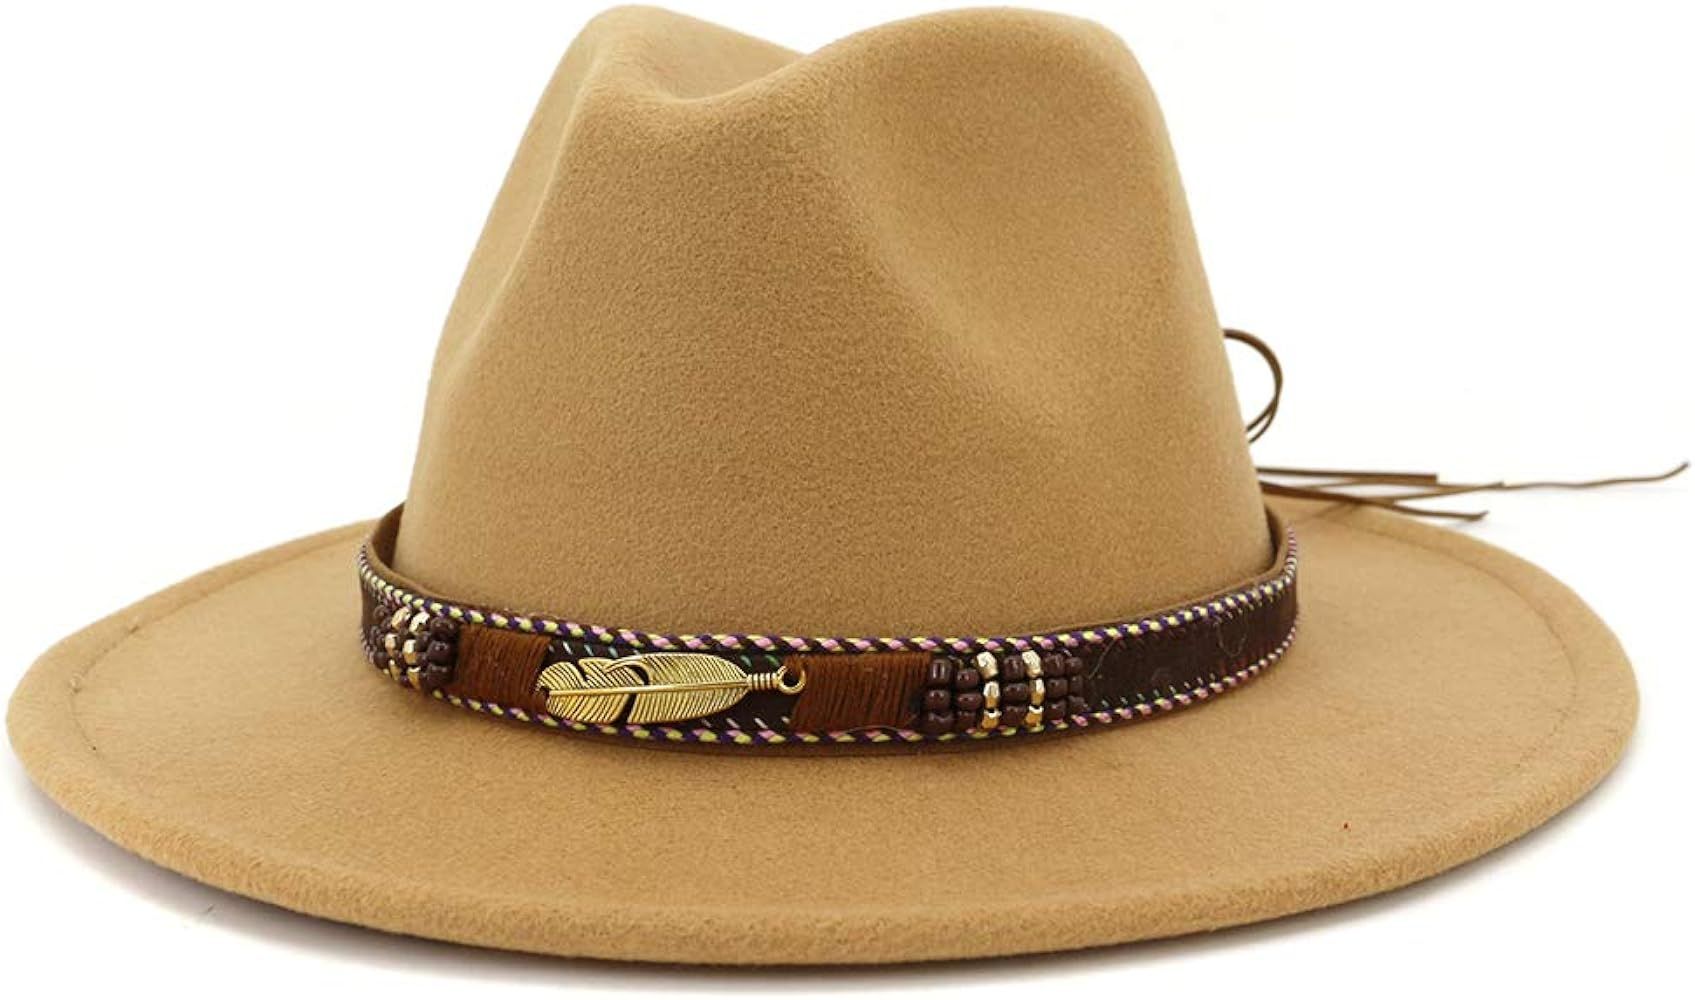 HUDANHUWEI Men Women Ethnic Felt Fedora Hat Wide Brim Panama Hats with Band | Amazon (US)